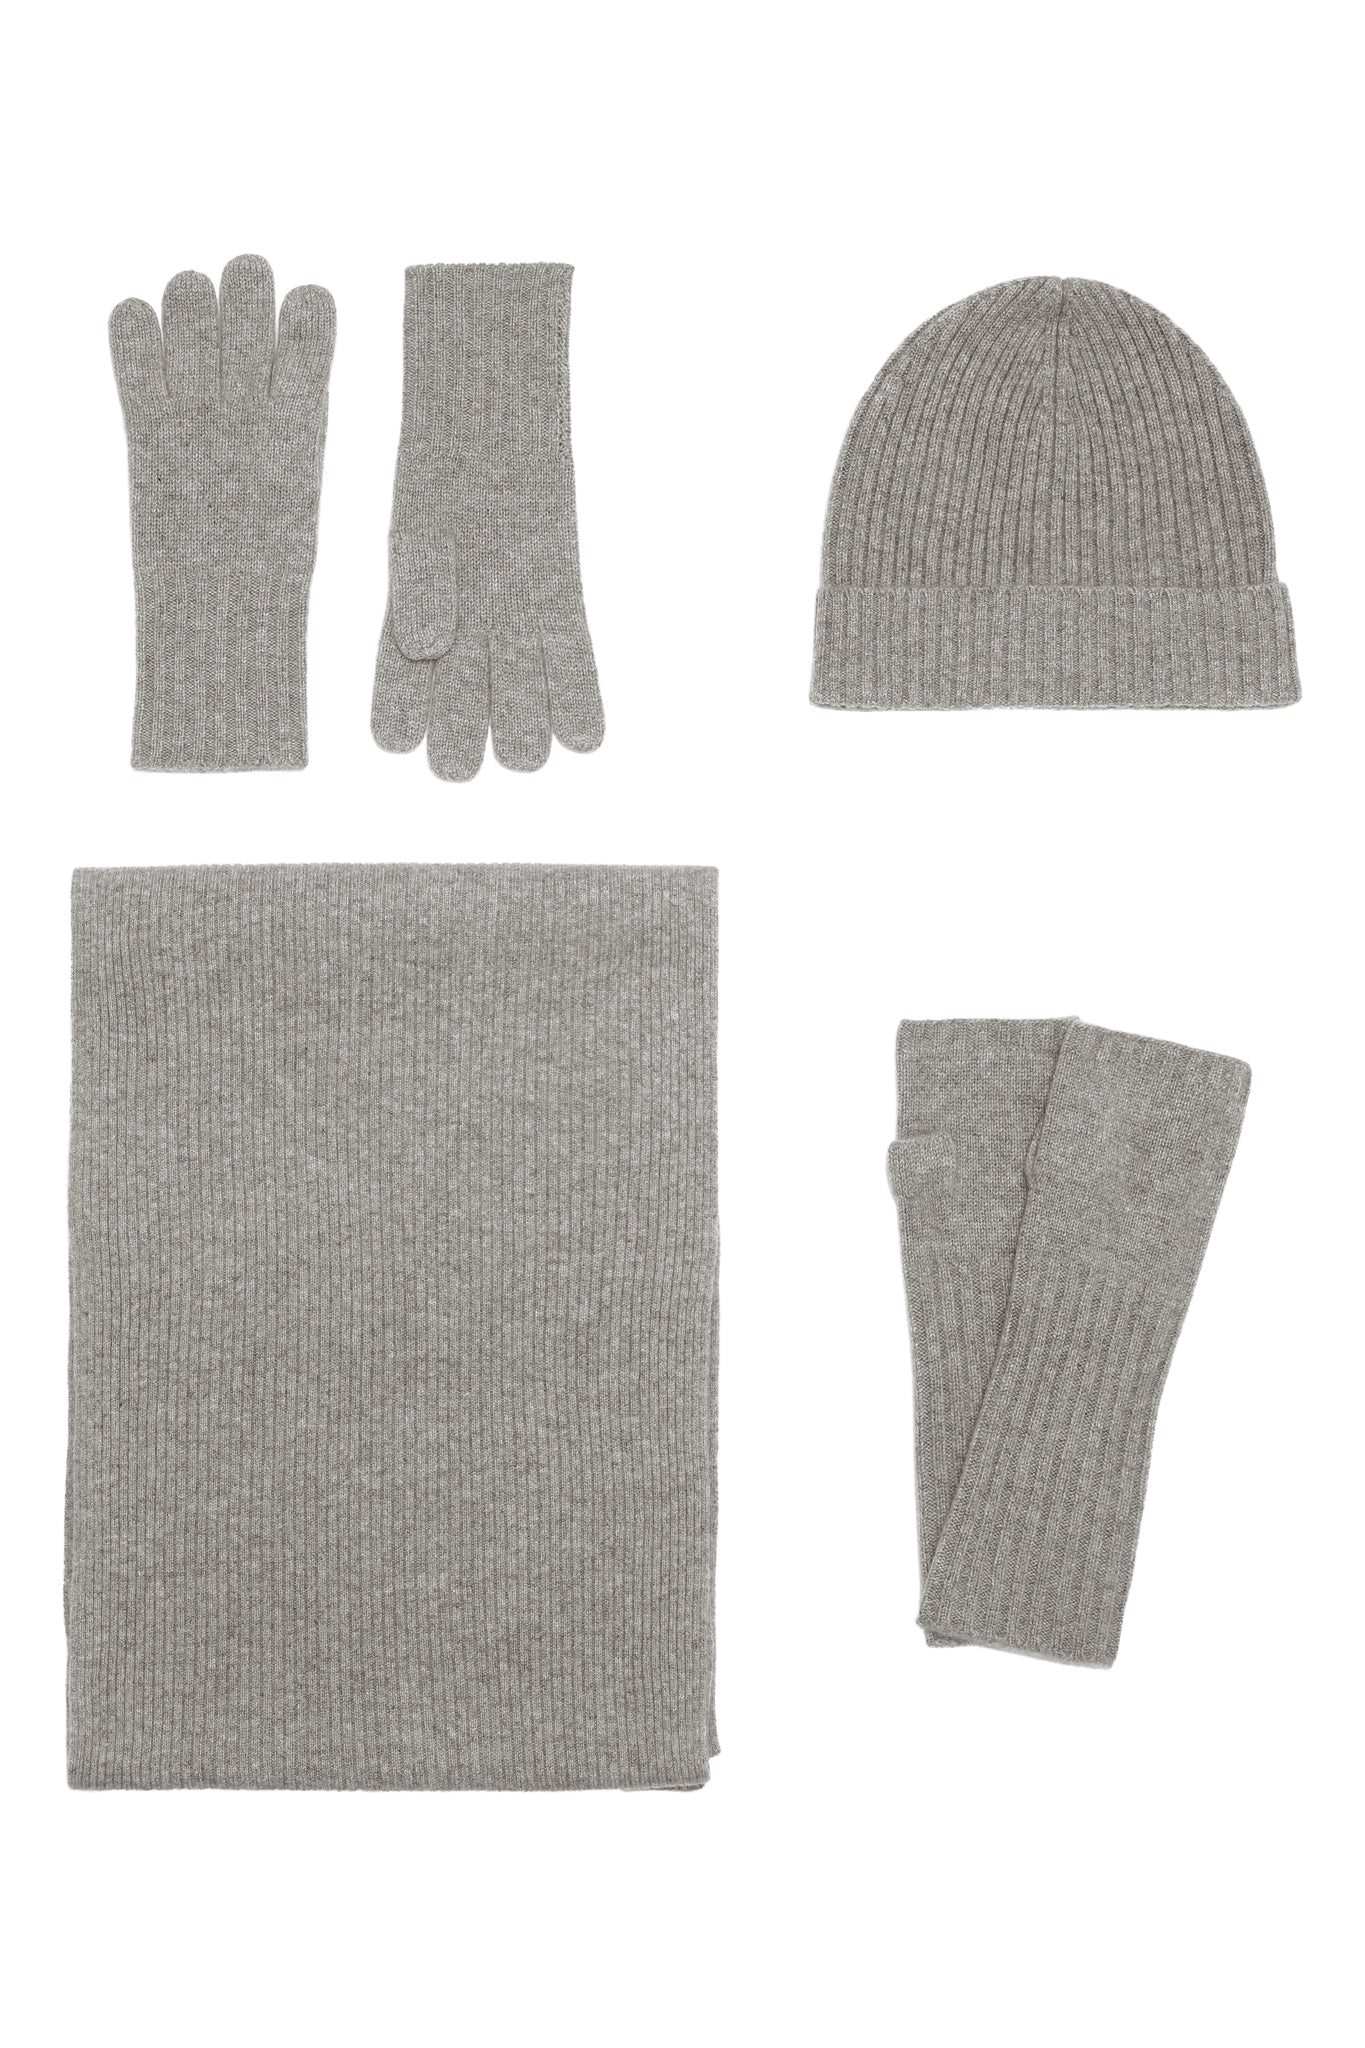 Robin -  håndledsvarmere (fingerløse vanter) i strikket cashmere - Mellemgrå